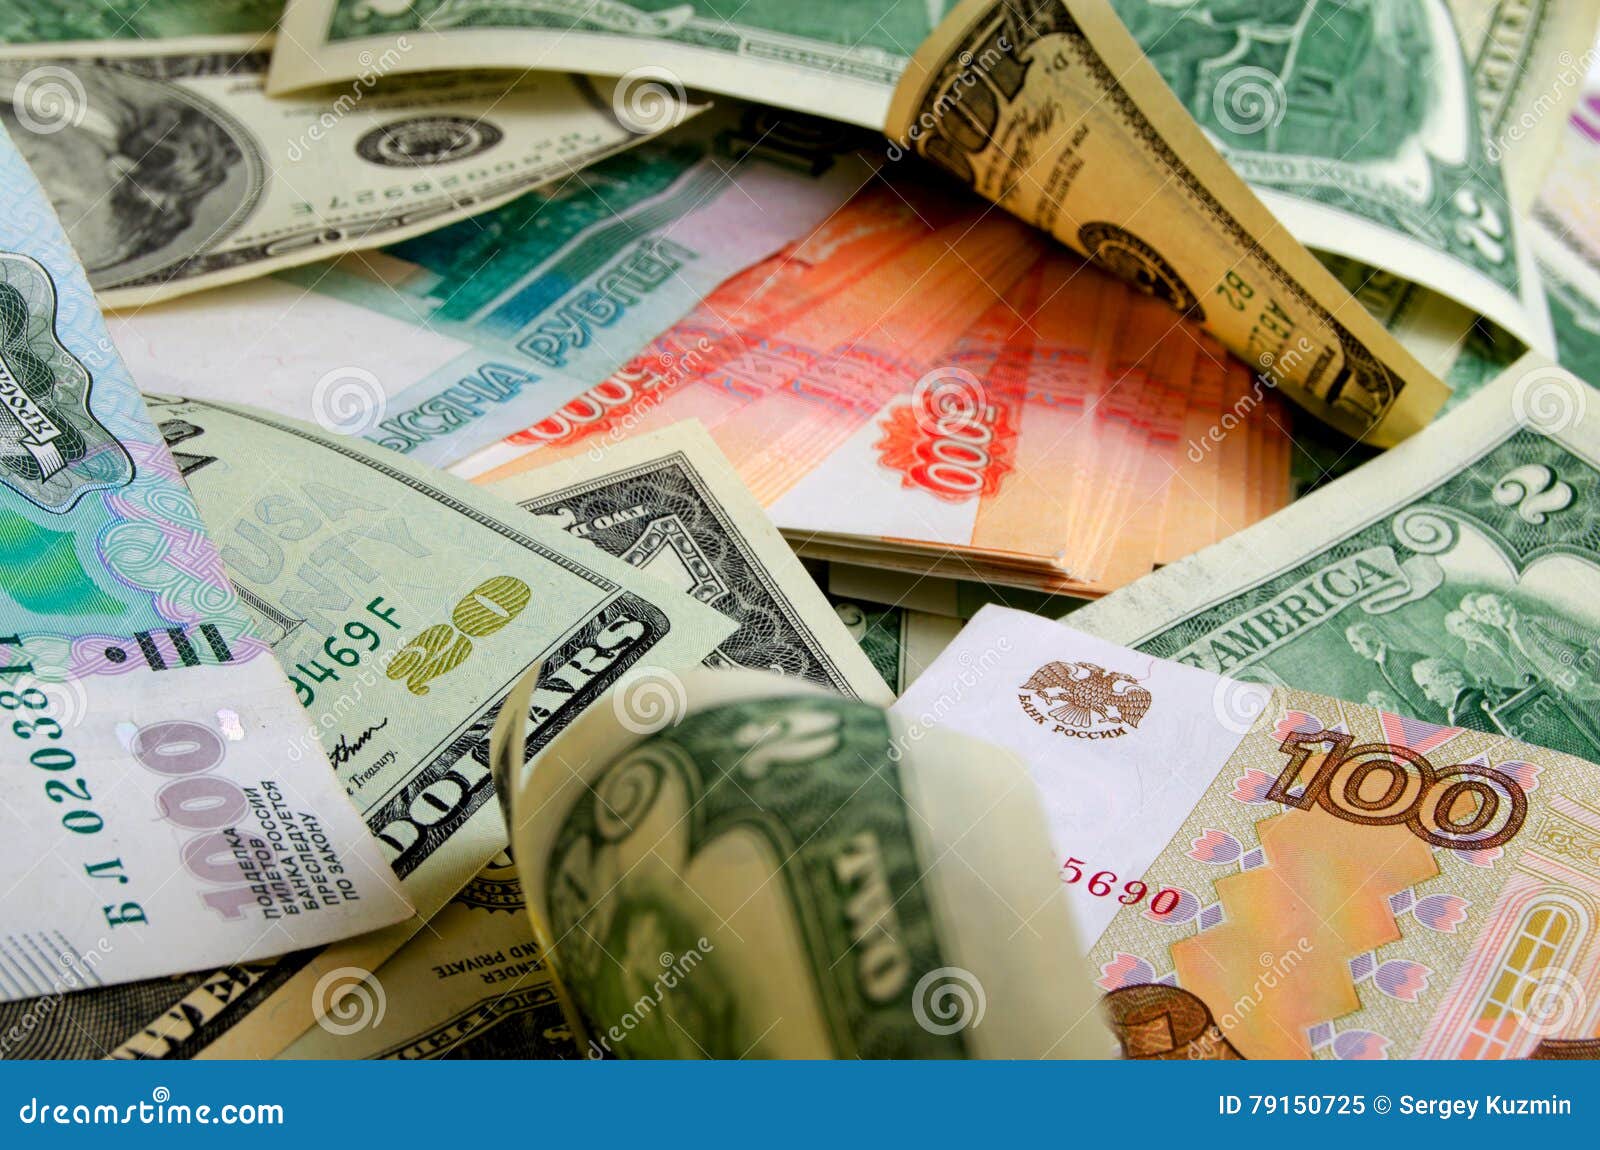 ruble-dollar ÃÂurrency speculation.